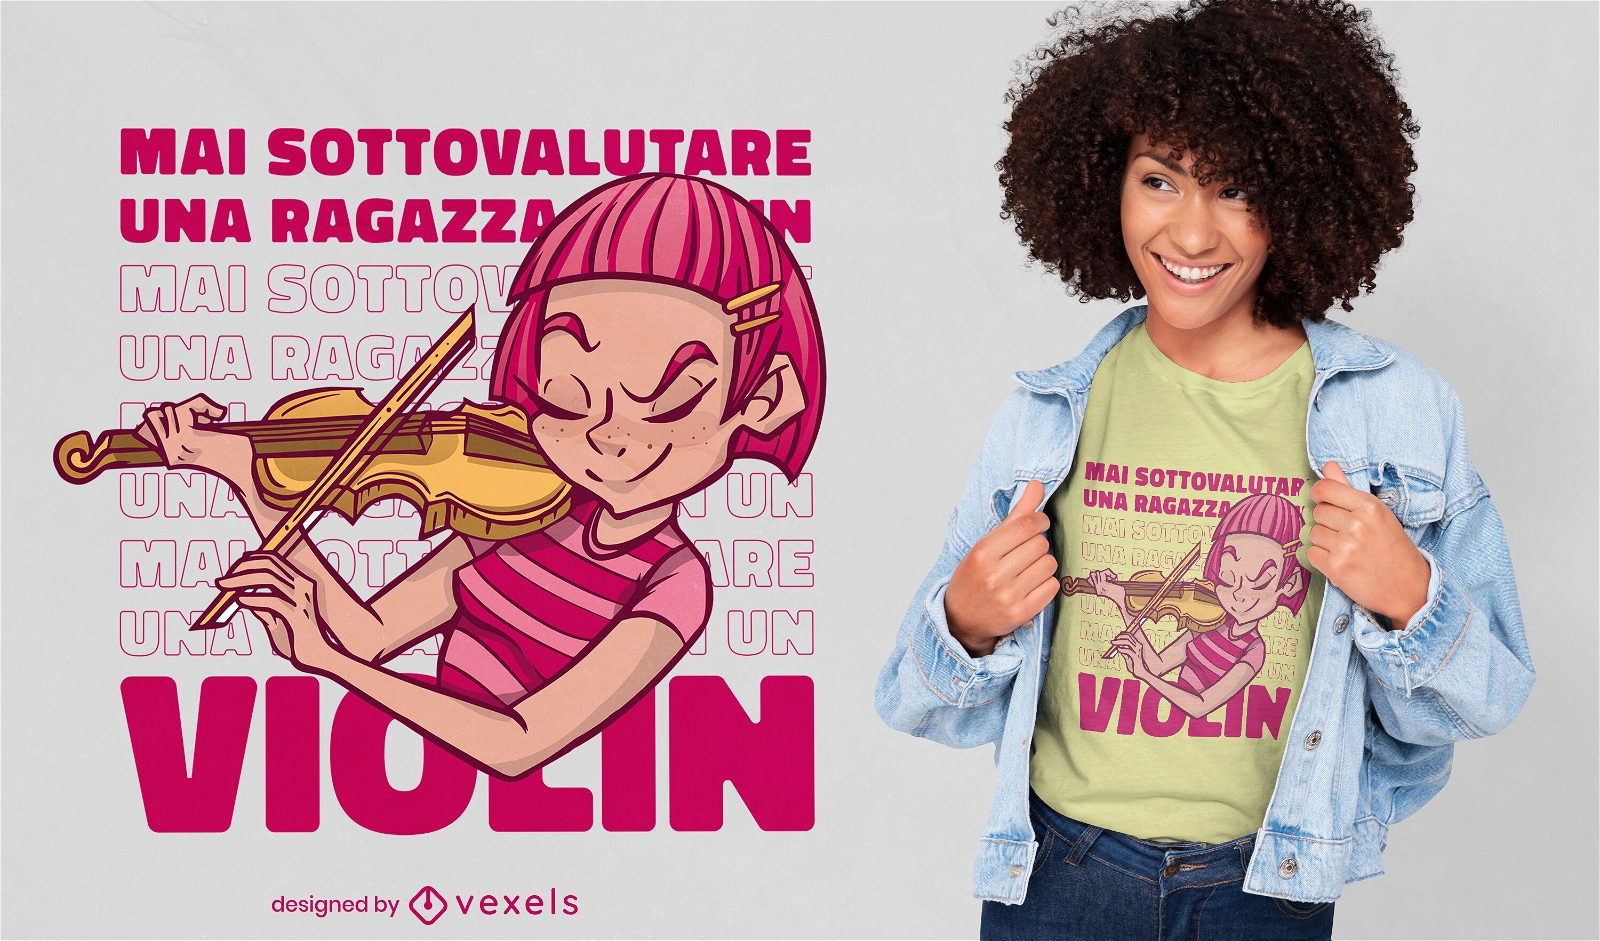 Italienisches Zitat-T-Shirt Design des Violinenmädchens